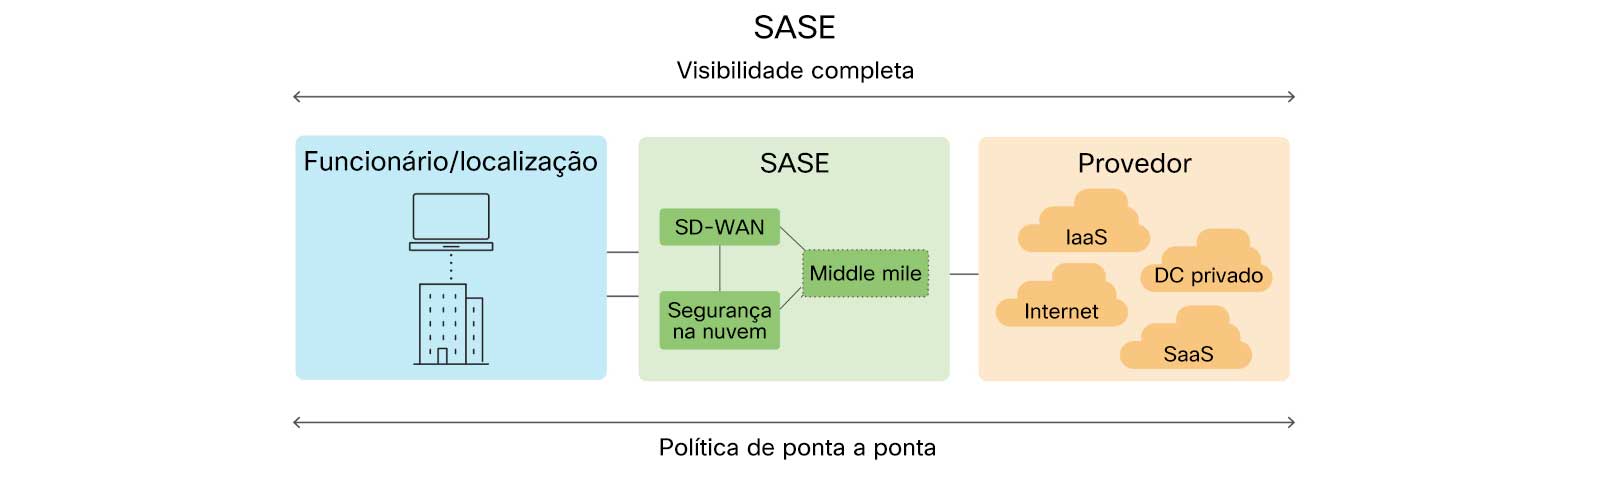 Gráfico mostrando a visão geral da arquitetura SASE, incluindo trabalhador/local, SASE e provedor.